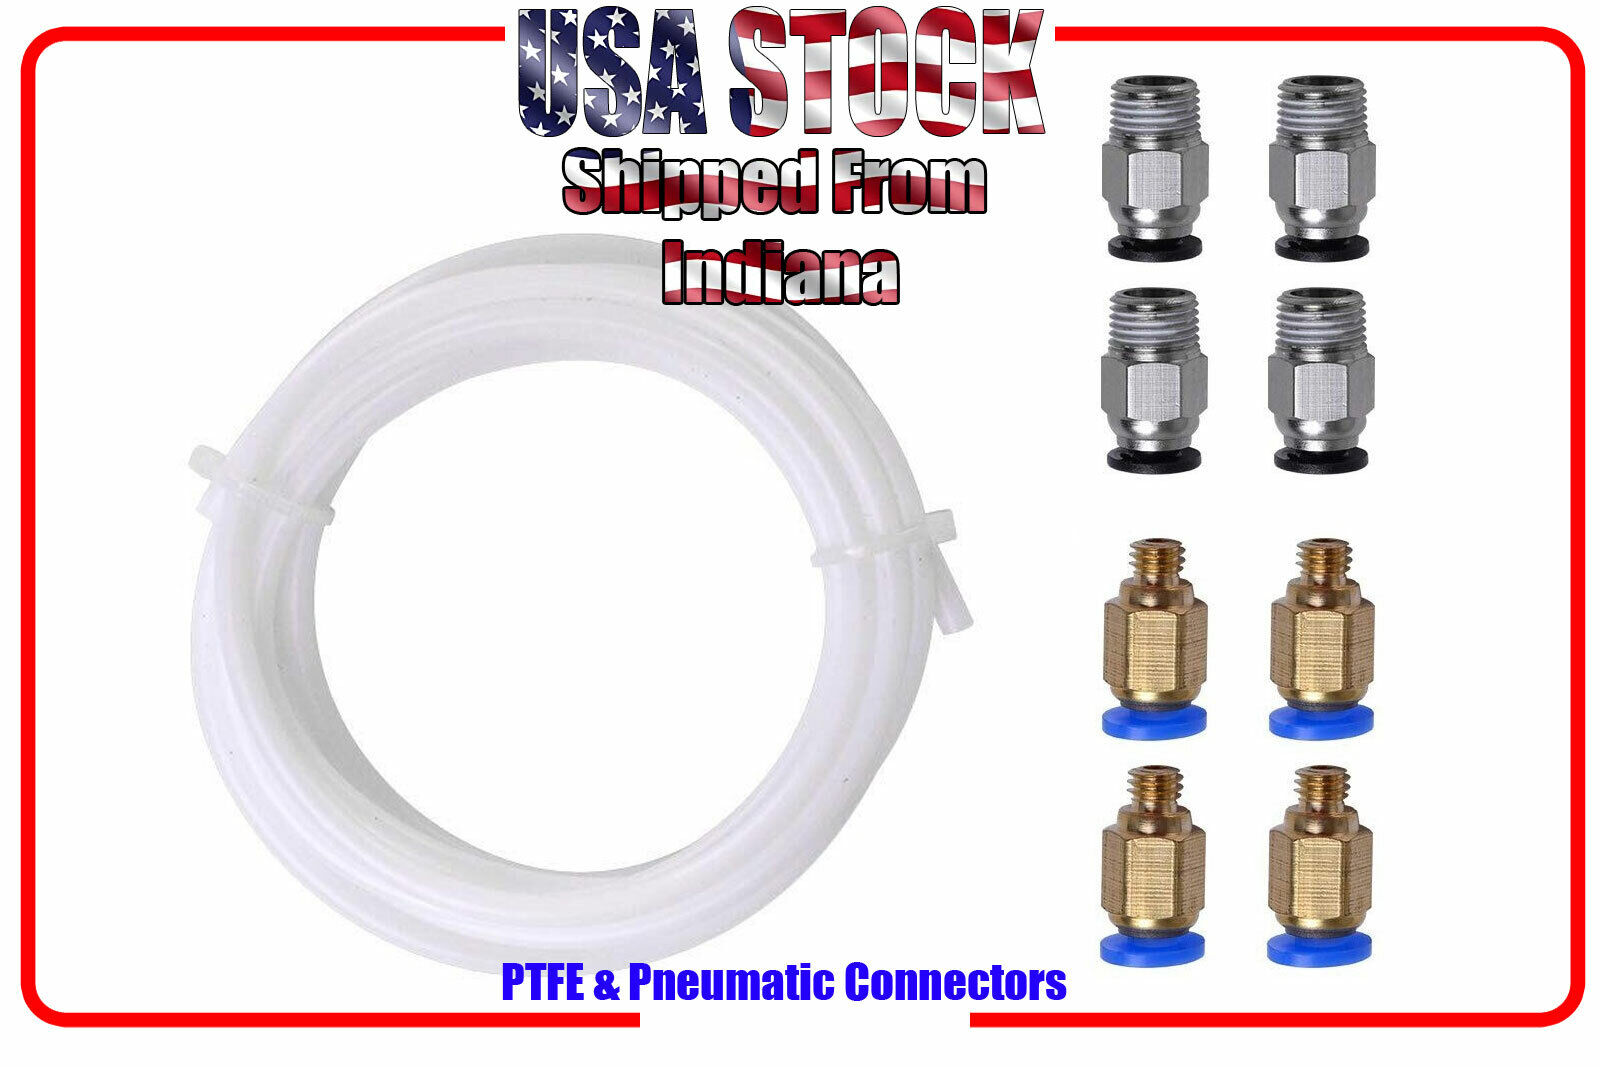 2pc PTFE Teflon Tube, 4pc PC4-M6 Quick Fittings, 4pc PC4-M10 Pneumatic Fittings